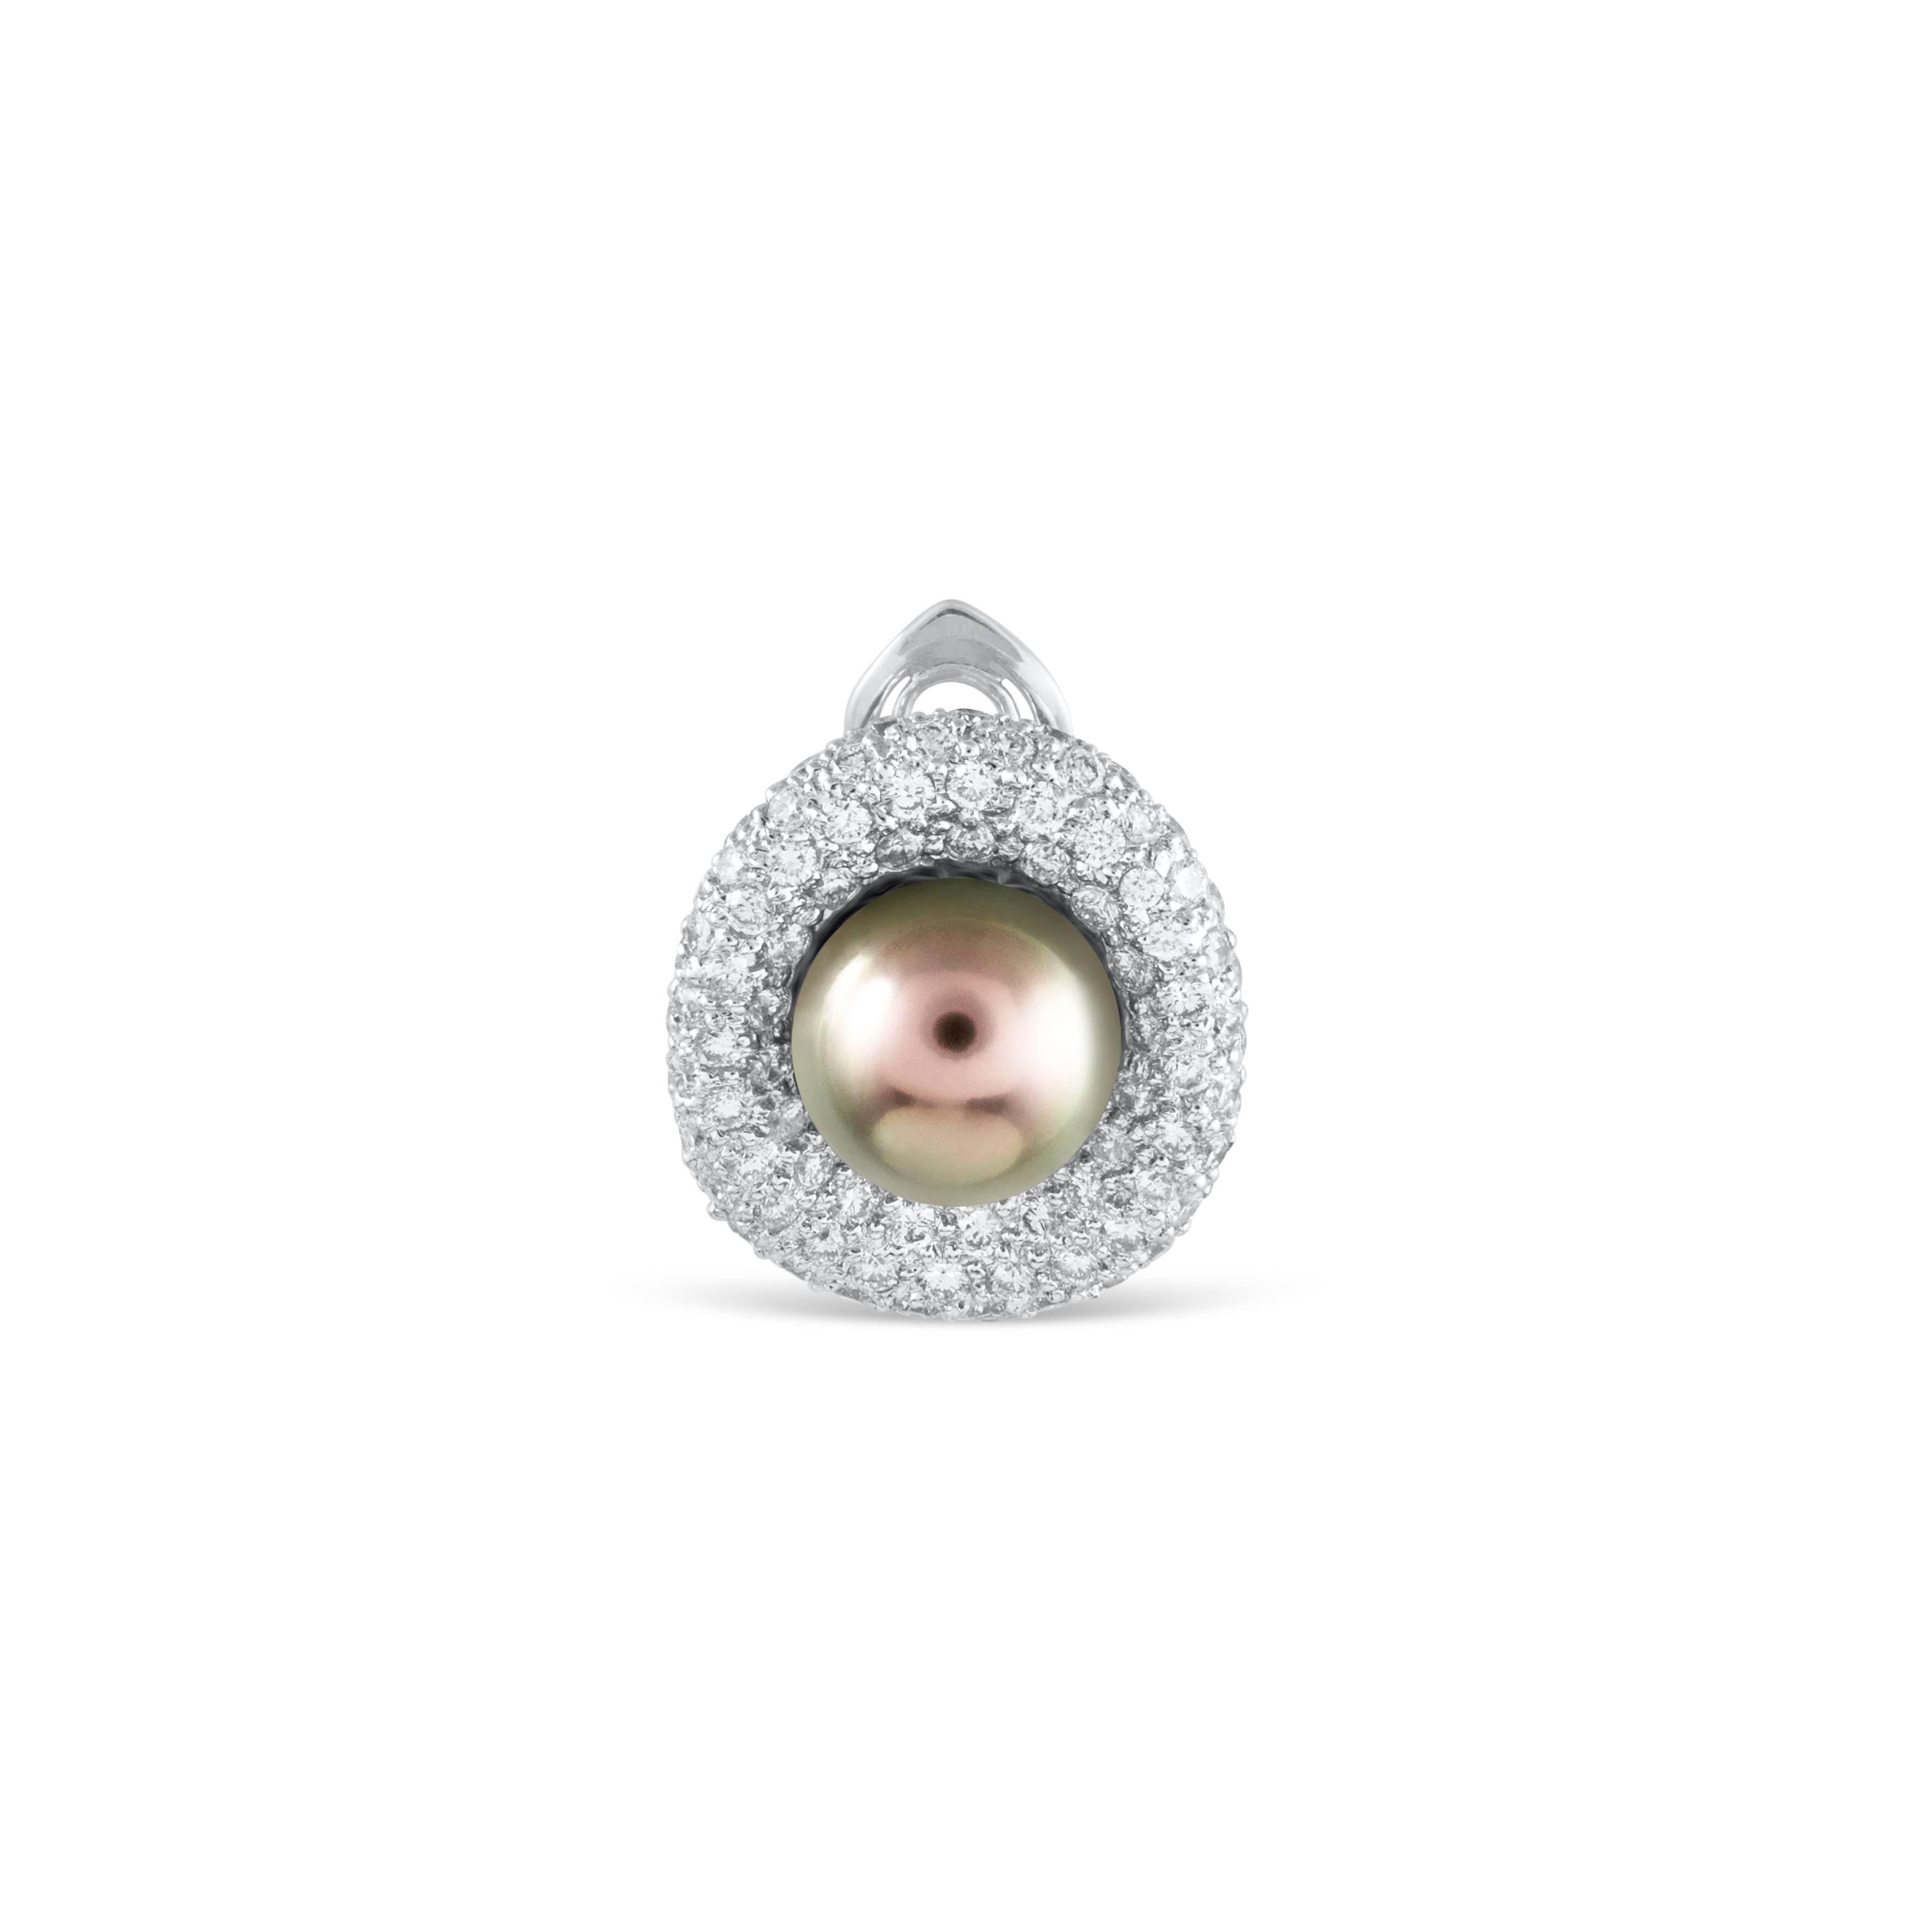 Diese anmutigen Ohrringe bestehen aus wunderschönen 9,5 Millimeter großen Tahiti-Perlen, die elegant von einem funkelnden, mikrogefassten Diamanten umgeben sind. Die Diamanten wiegen insgesamt 3.26 Karat. Hergestellt in 18K Weißgold

Stil in